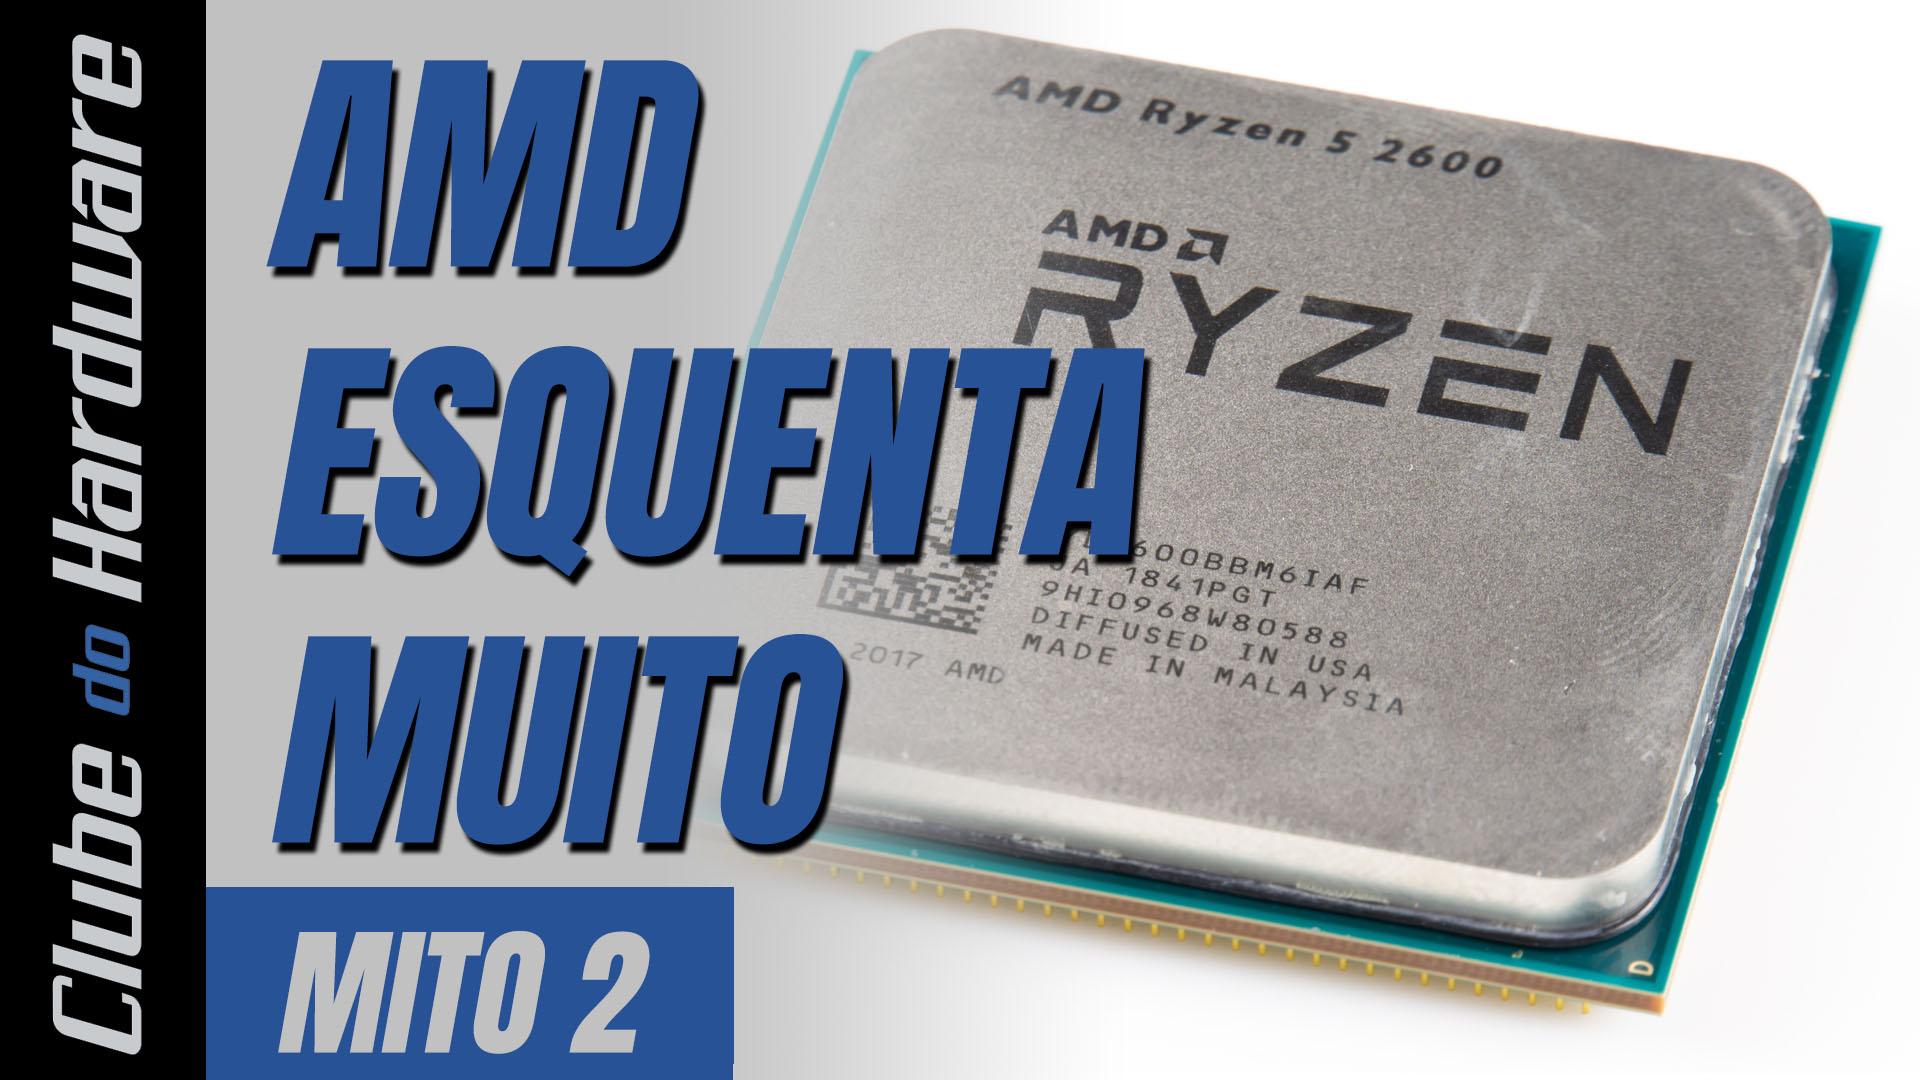 Mitos do hardware #02: Processadores AMD esquentam muito?